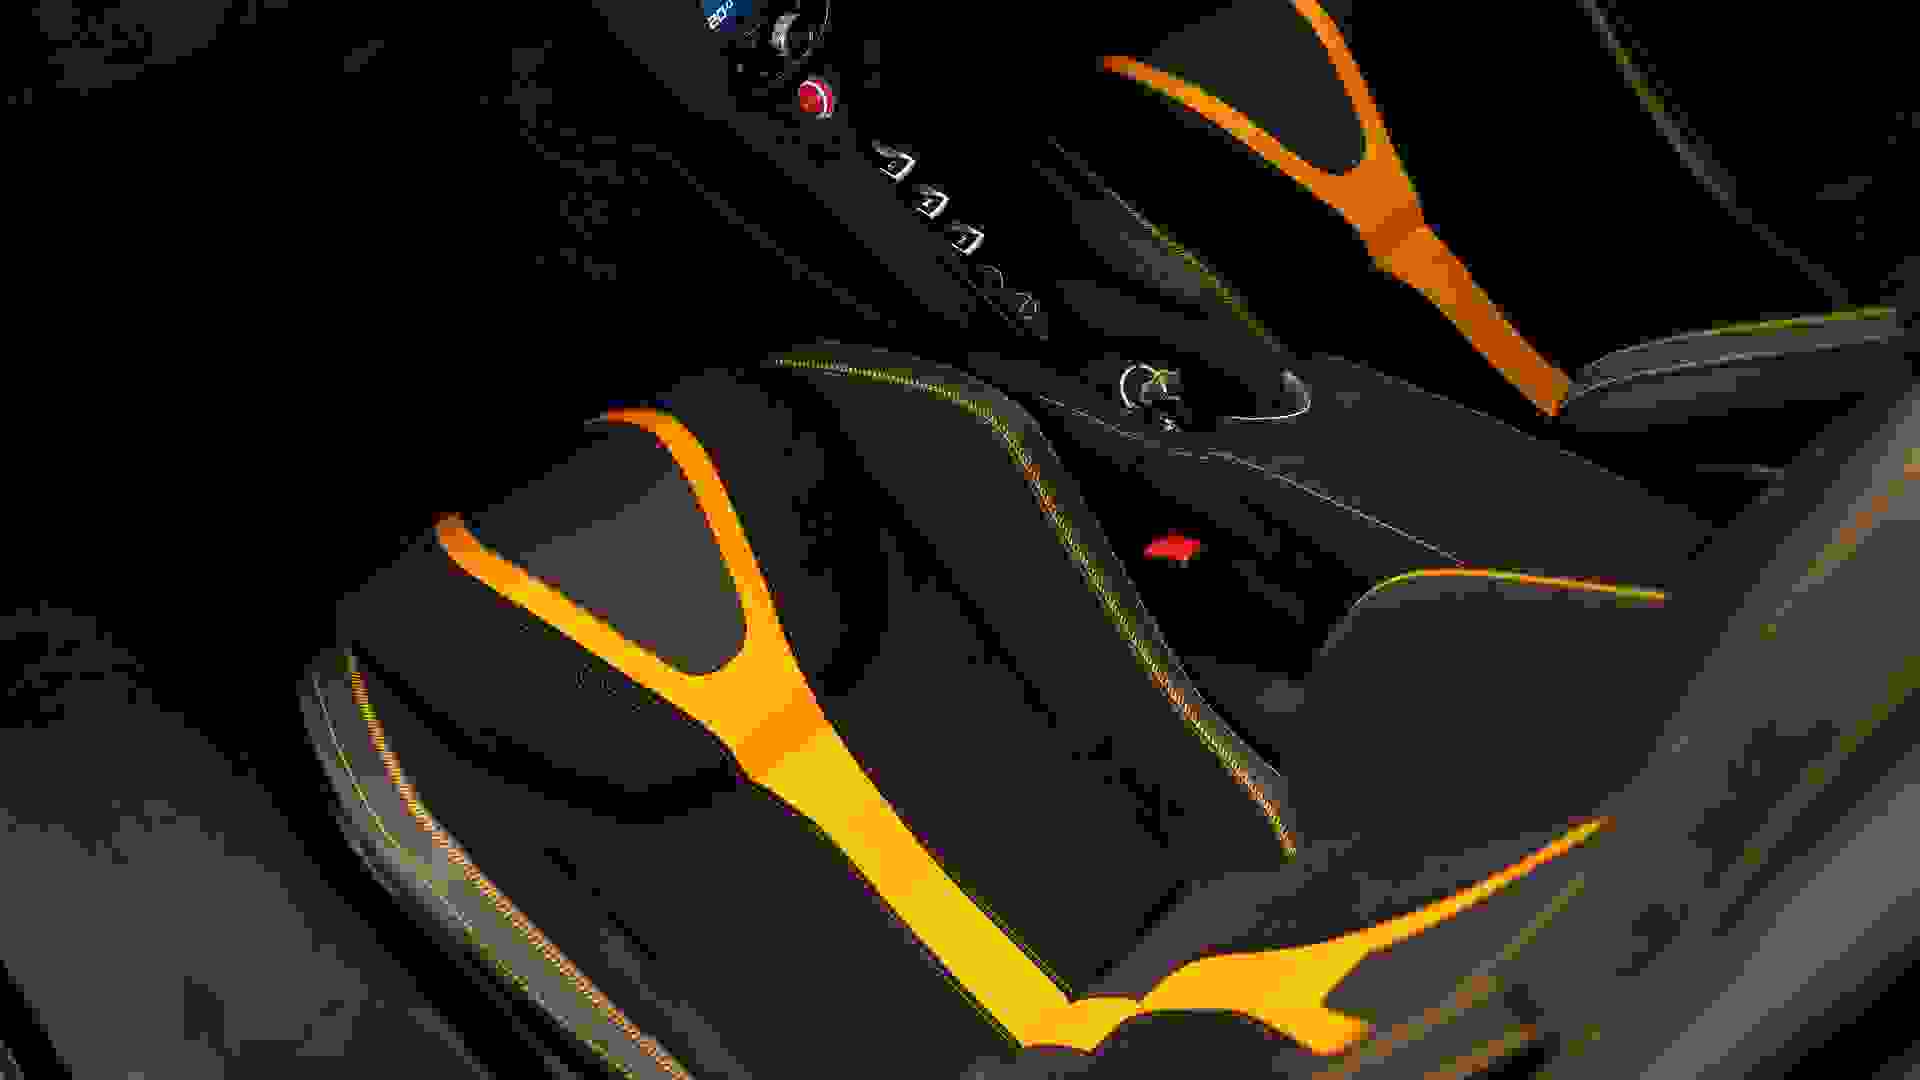 McLaren 720S Photo 2f2be1e5-4e96-4ef5-90f7-0948015f1f21.jpg